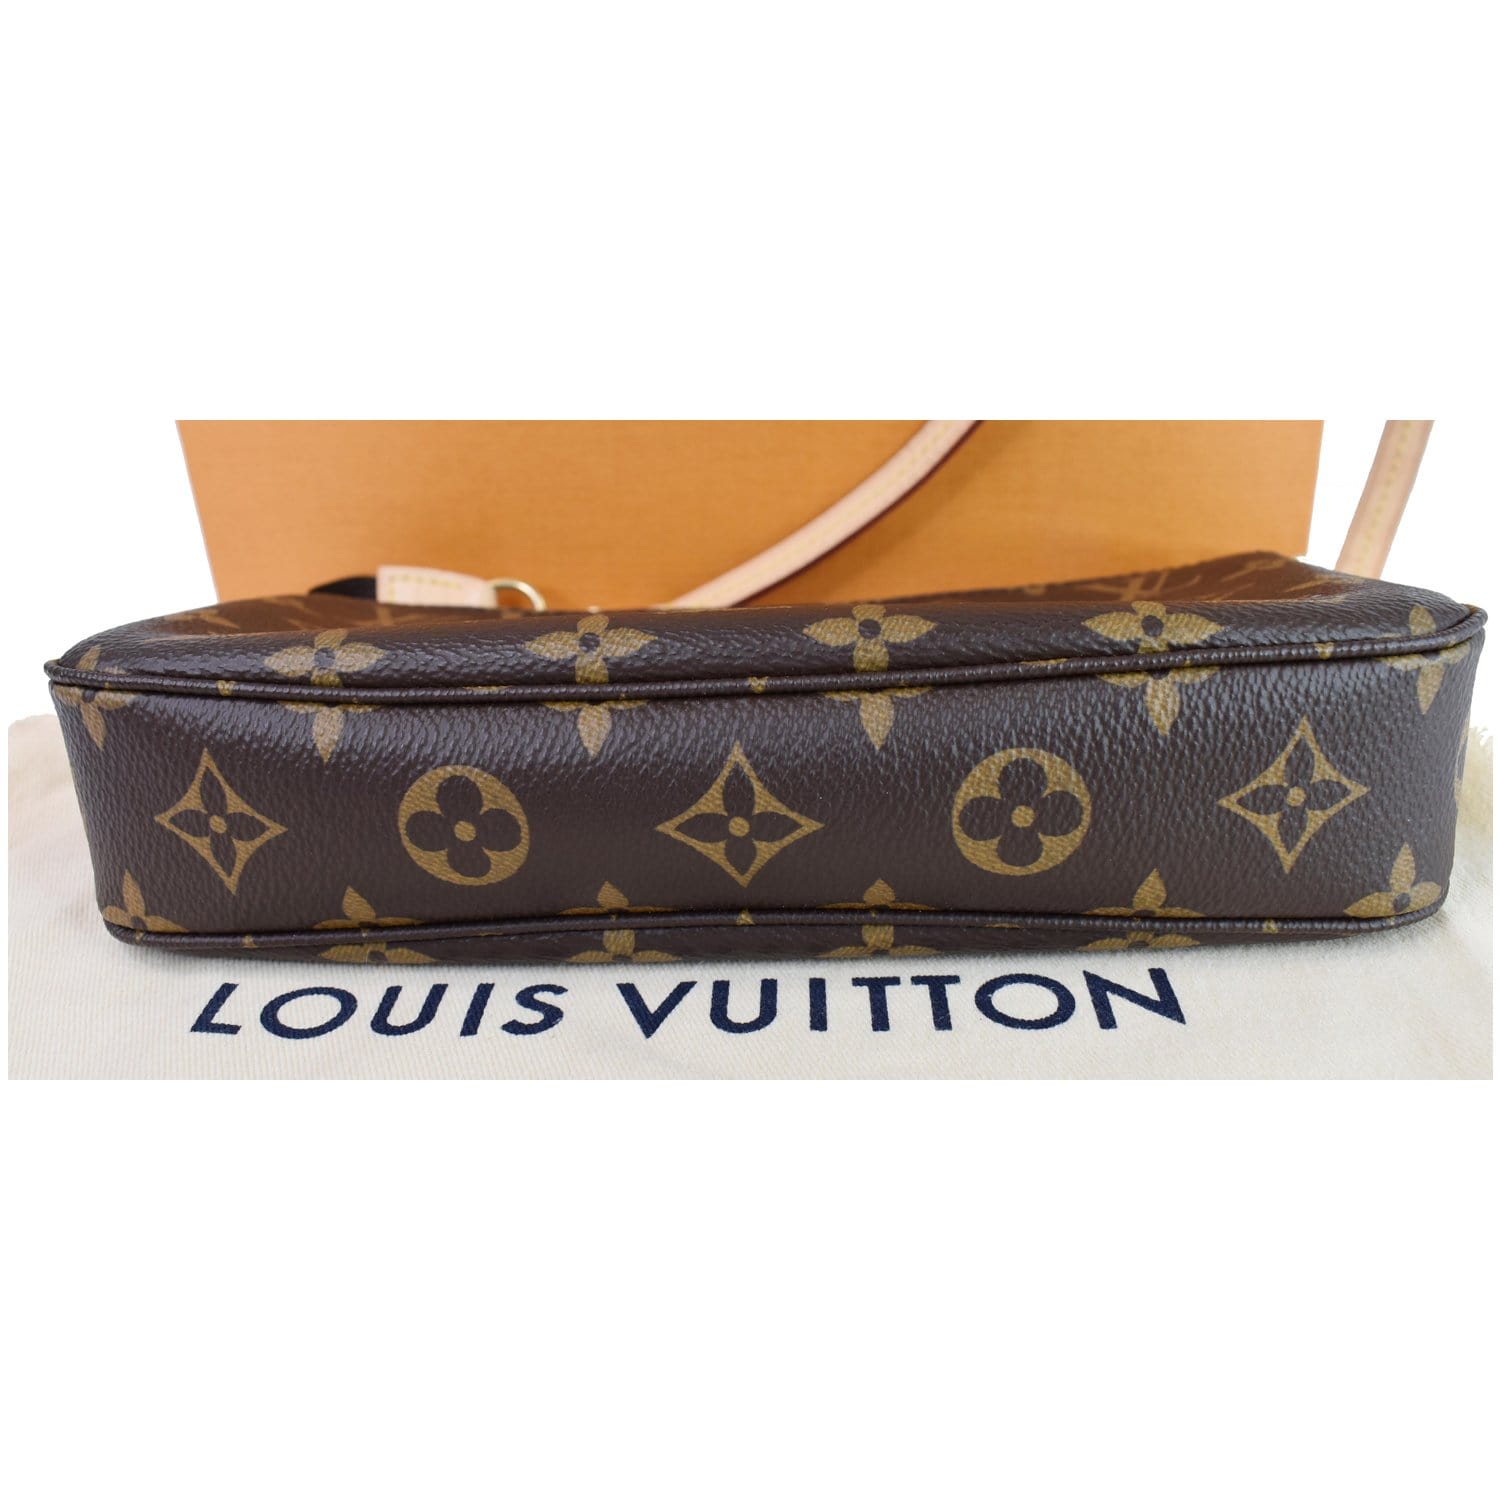 At Auction: Louis Vuitton, Louis Vuitton Pochette Métis Monogram